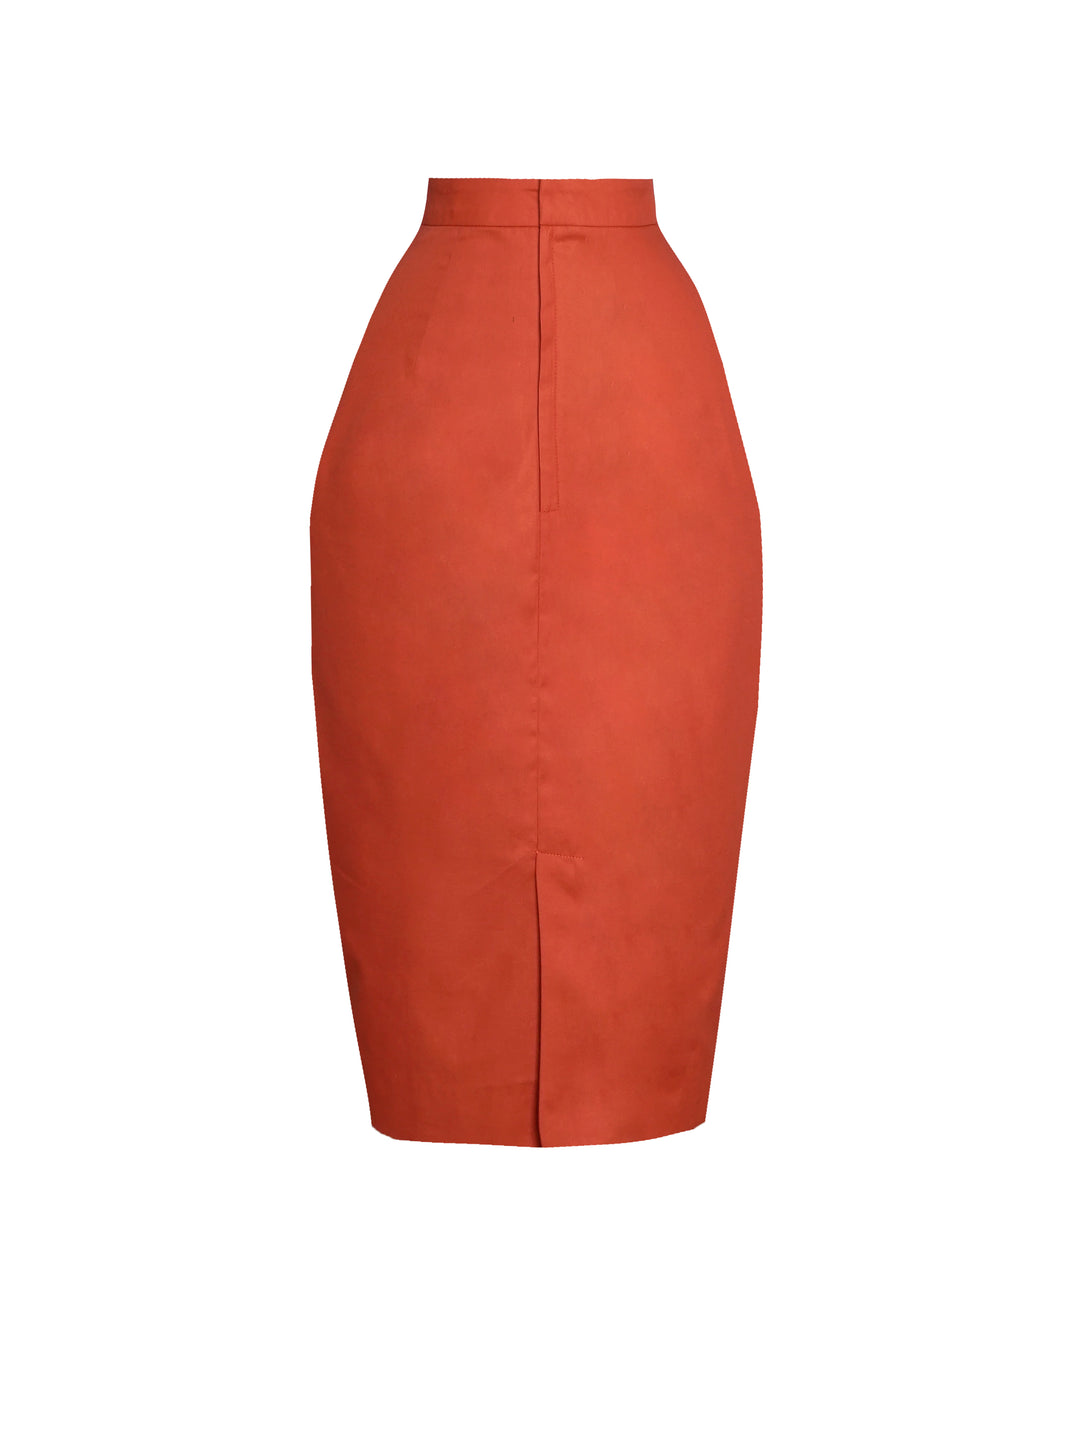 MTO - Denham Skirt in Rustic Red Cotton